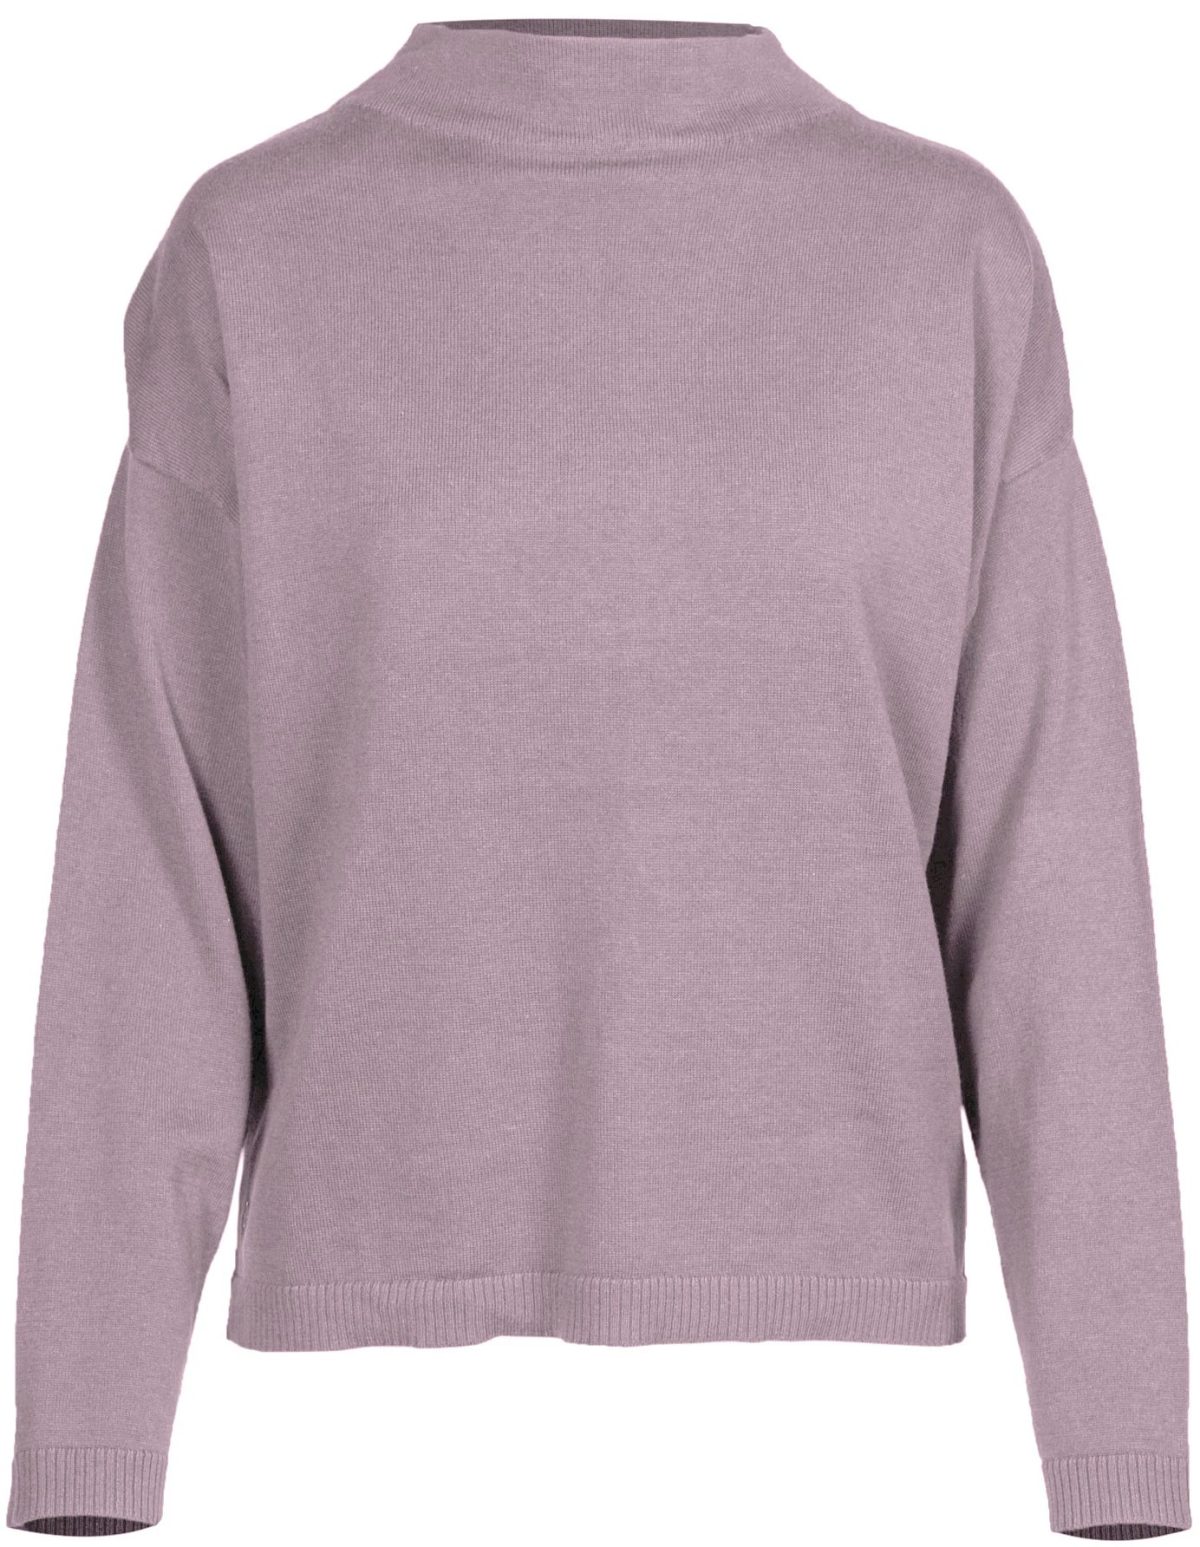 Levelwear Verve Women's Poise Golf Sweater, 100% Cotton in Elderberry, Size S